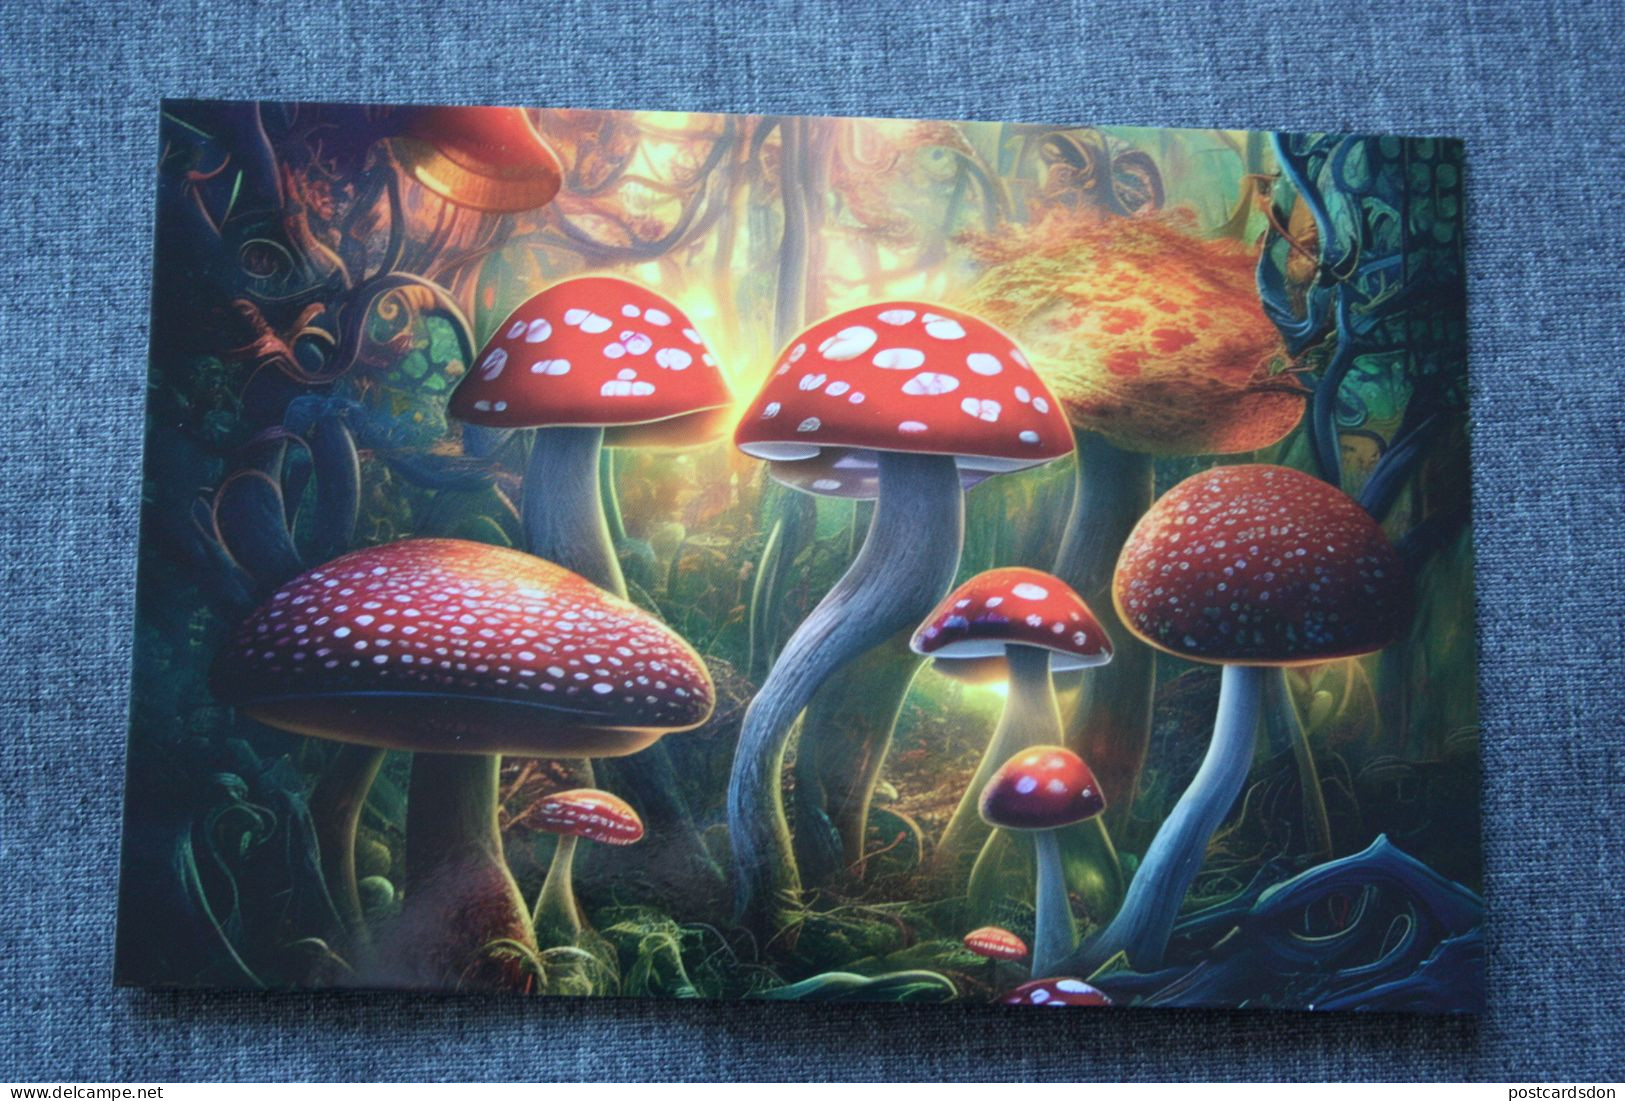 Russia. Amanita. Smart Mushrooms. Mushroom - Champignon - Funghi